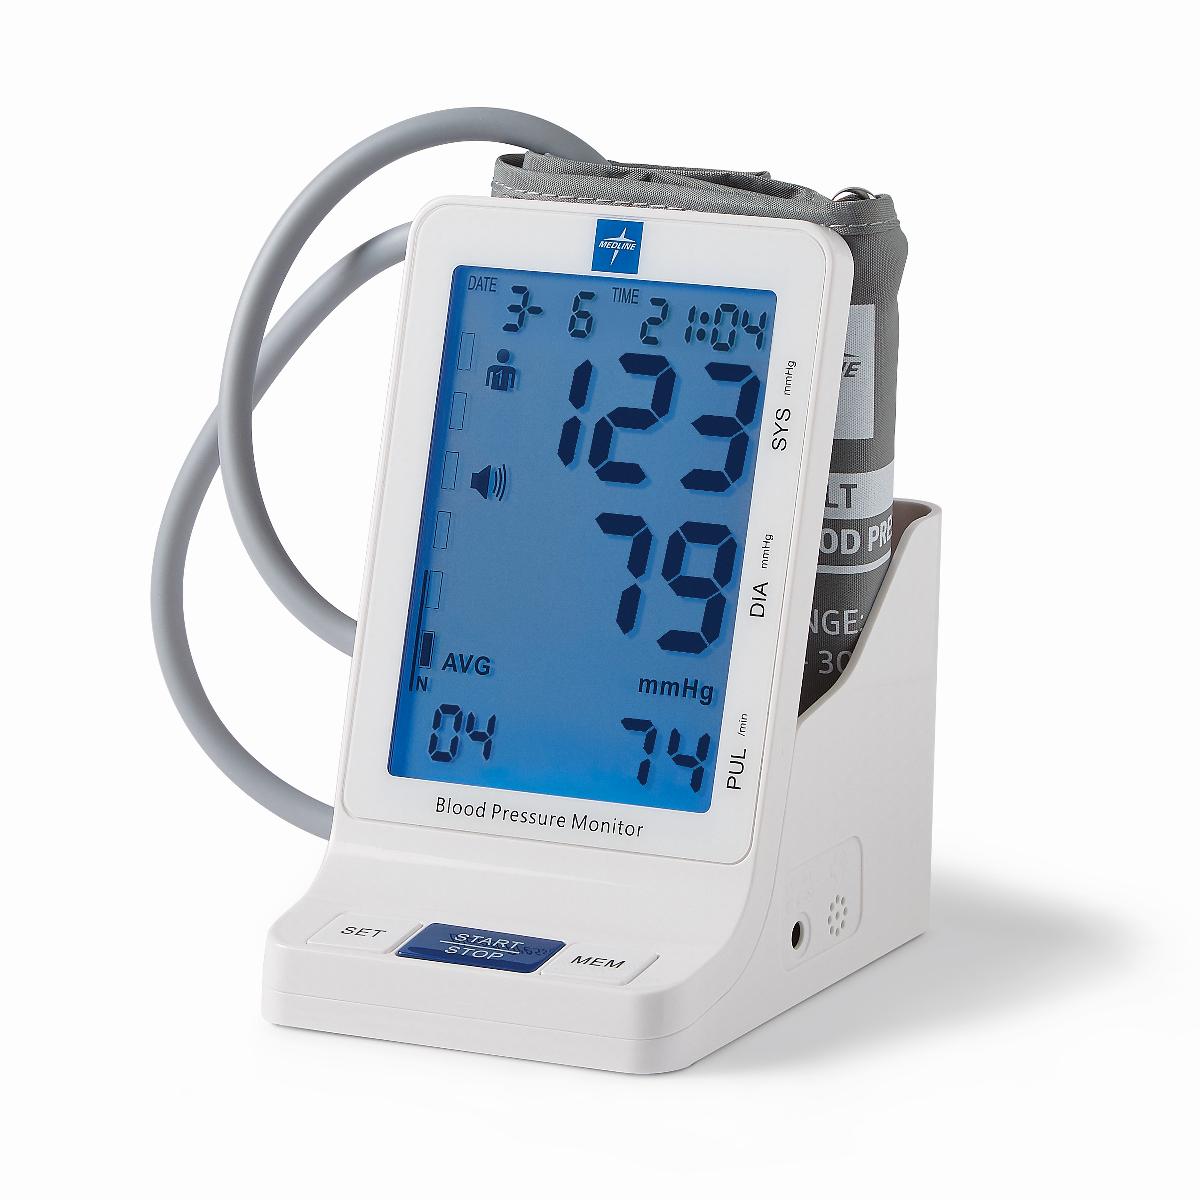 Dual digital tensiometer measuring blood pressure ankle-brachial